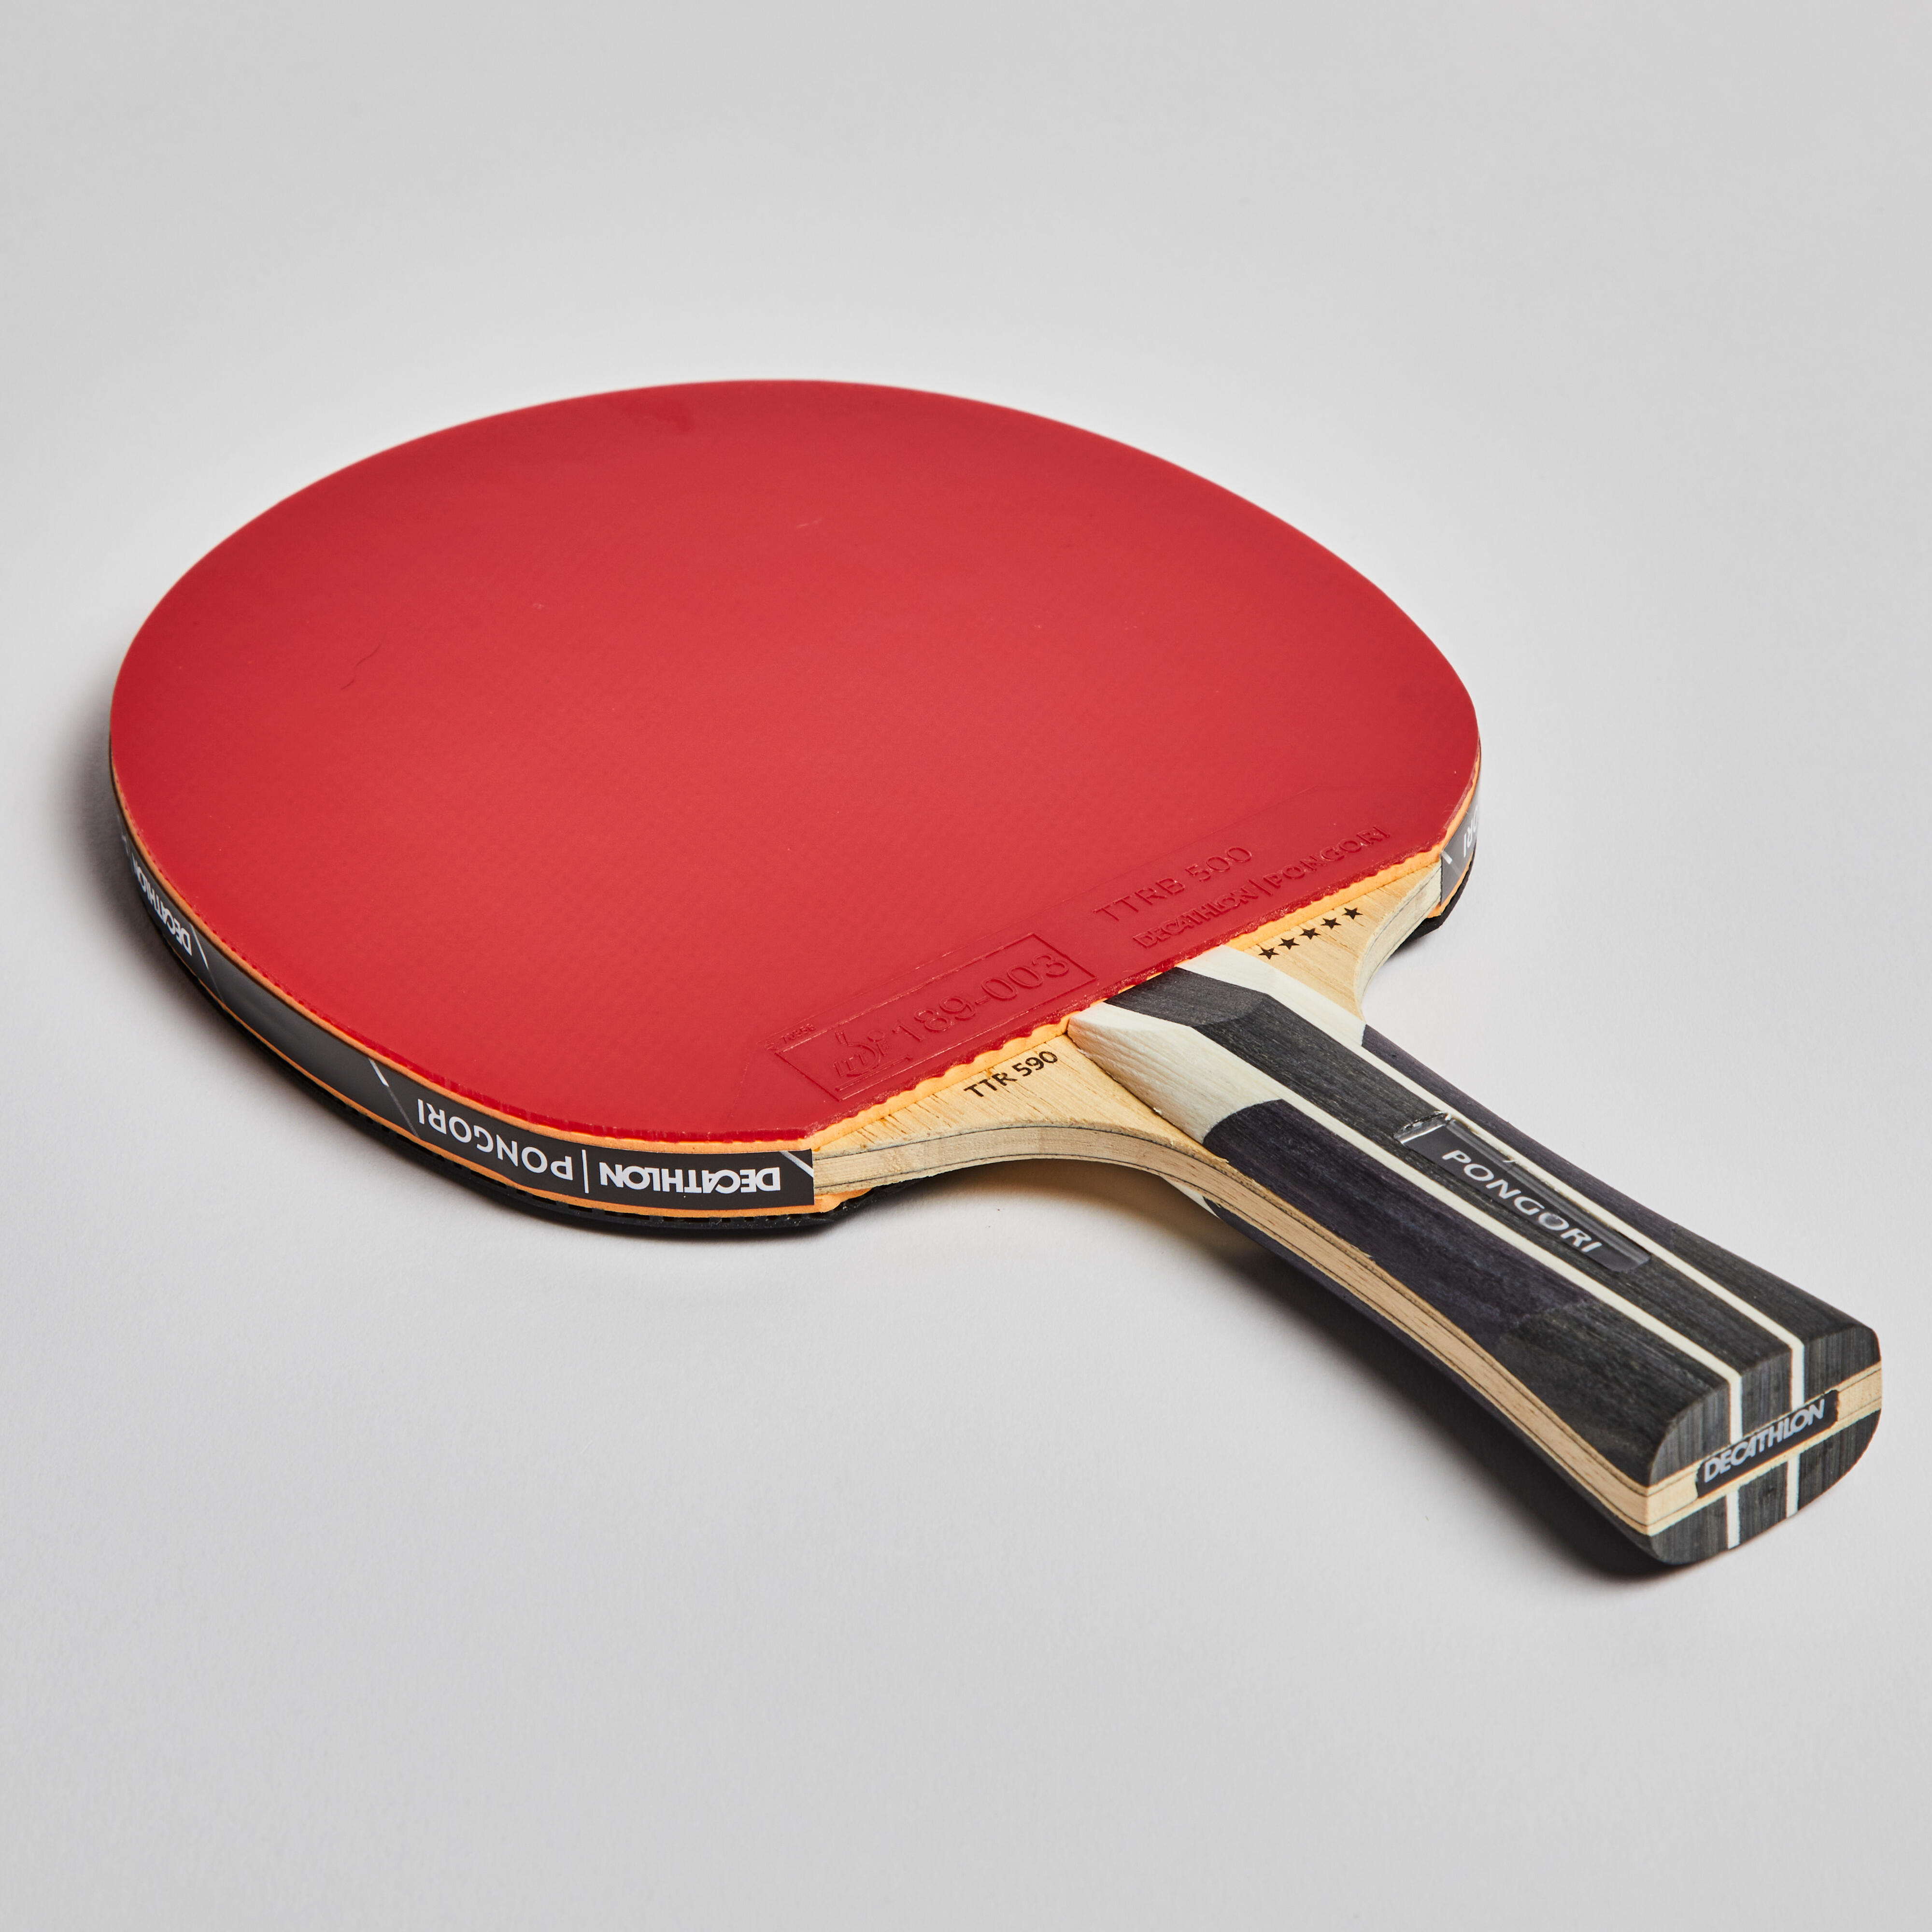 Raquette de tennis de table - TTR 590  - PONGORI